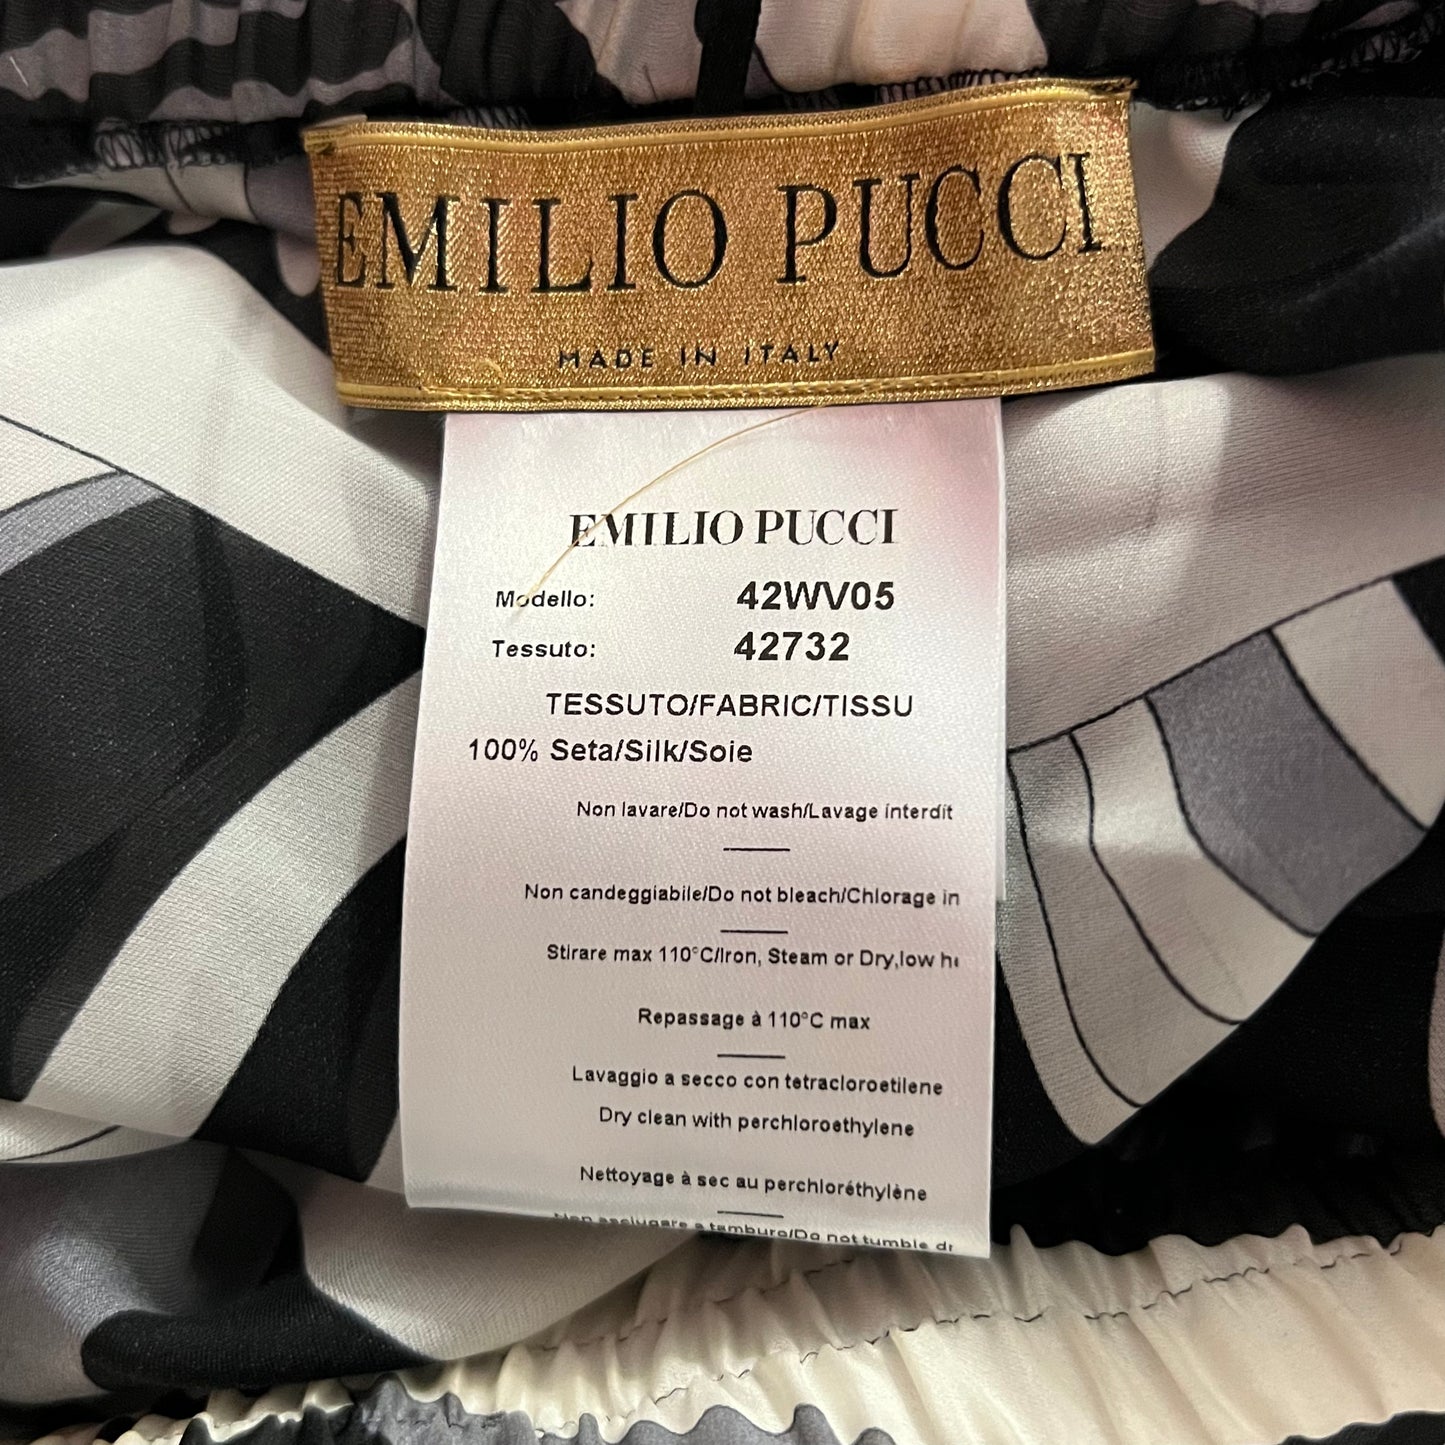 Emilio Pucci Monochrome Patterned Silk Chiffon Skirt